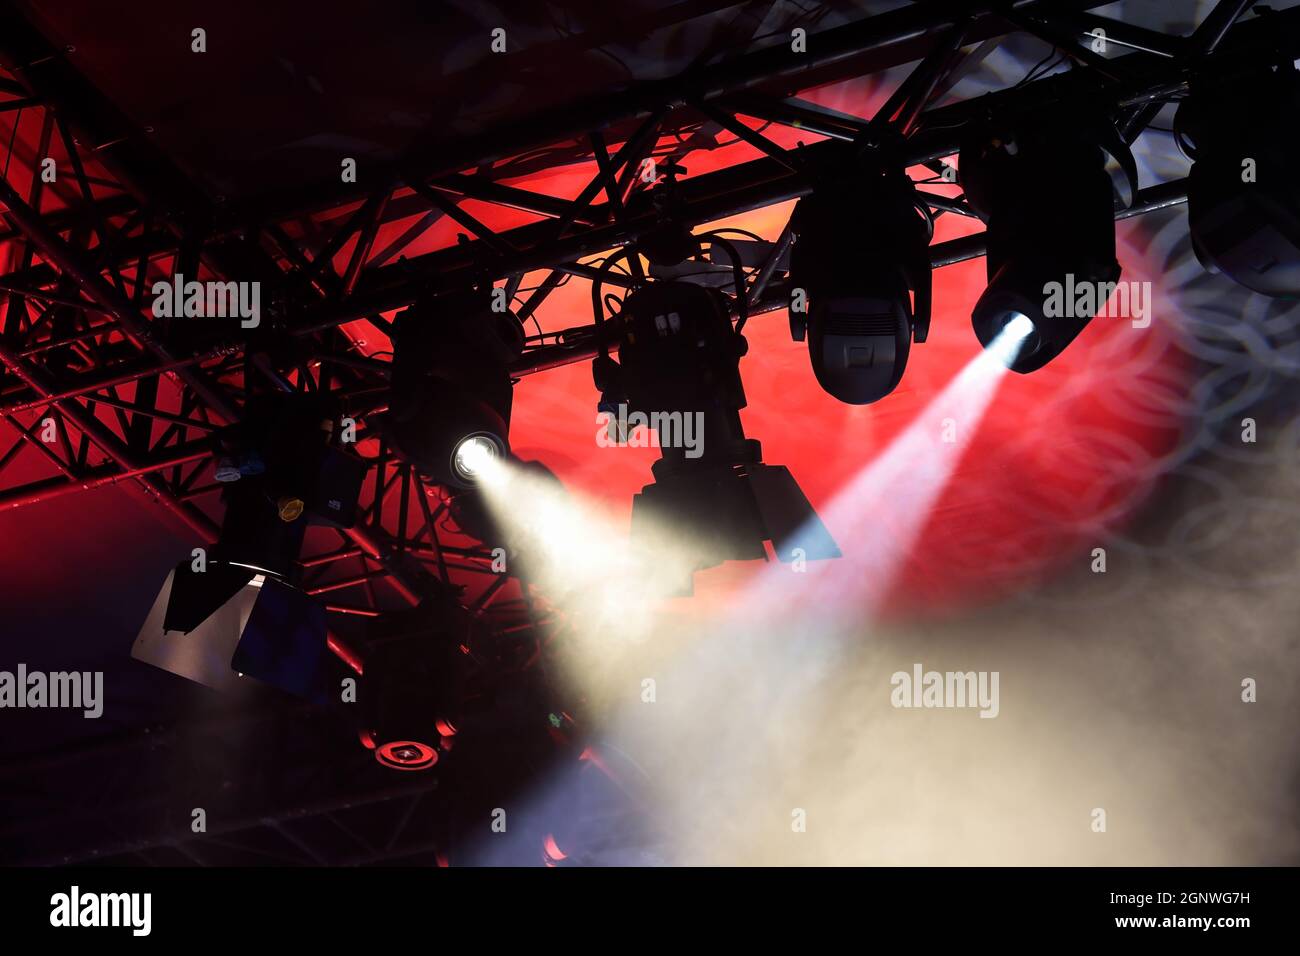 Bühnentraverse mit mehreren Scheinwerfern. An einem Traversen hängen bewegliche  Scheinwerfer Stockfotografie - Alamy